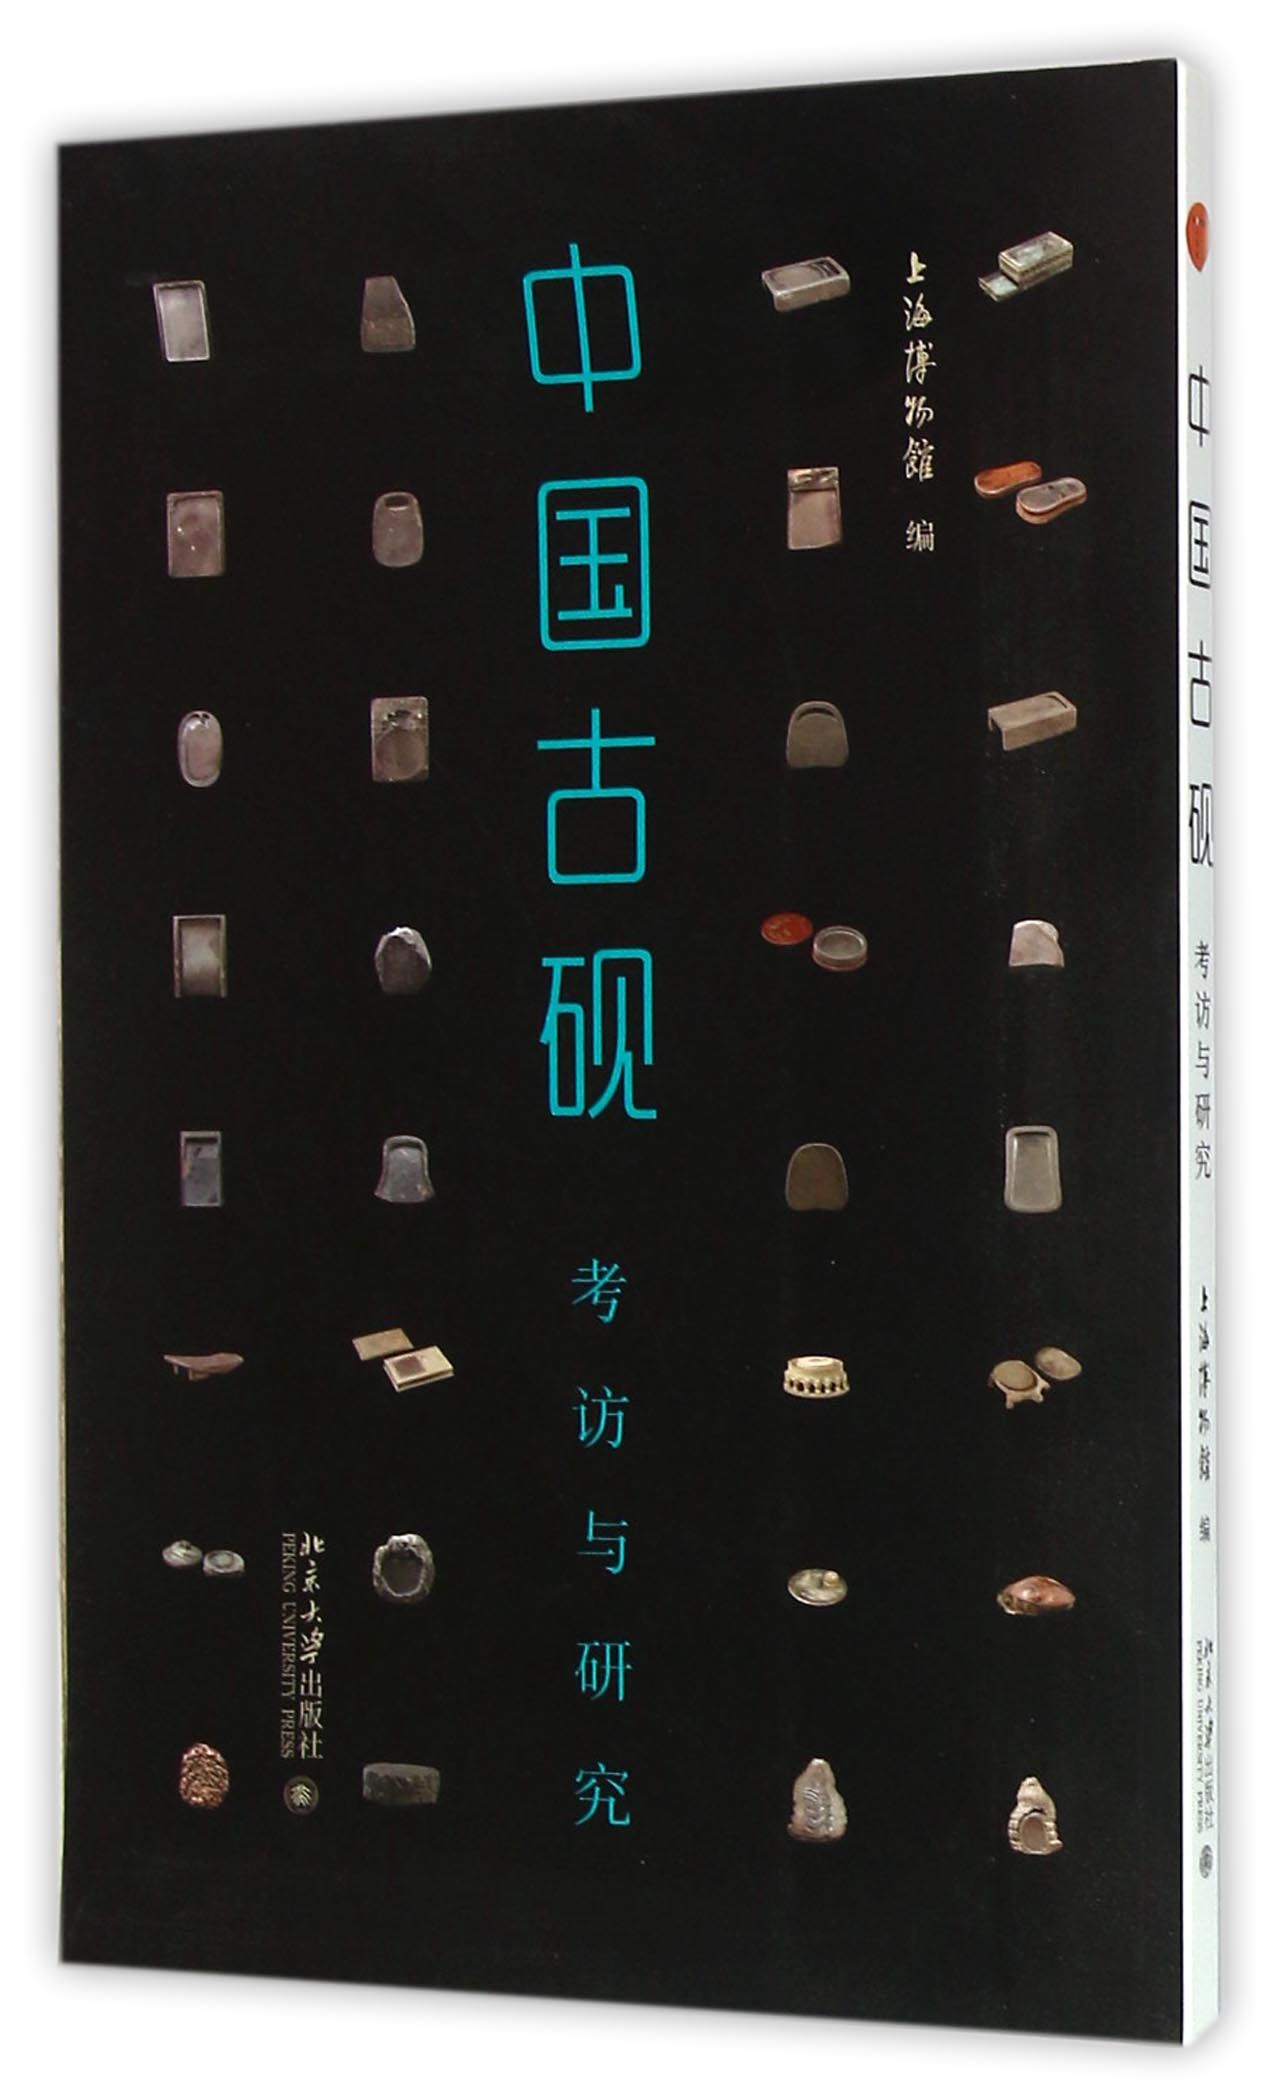 【现货】中国古砚(考访与研究)上海物馆787301265666北京大学出版社历史/文物/考古